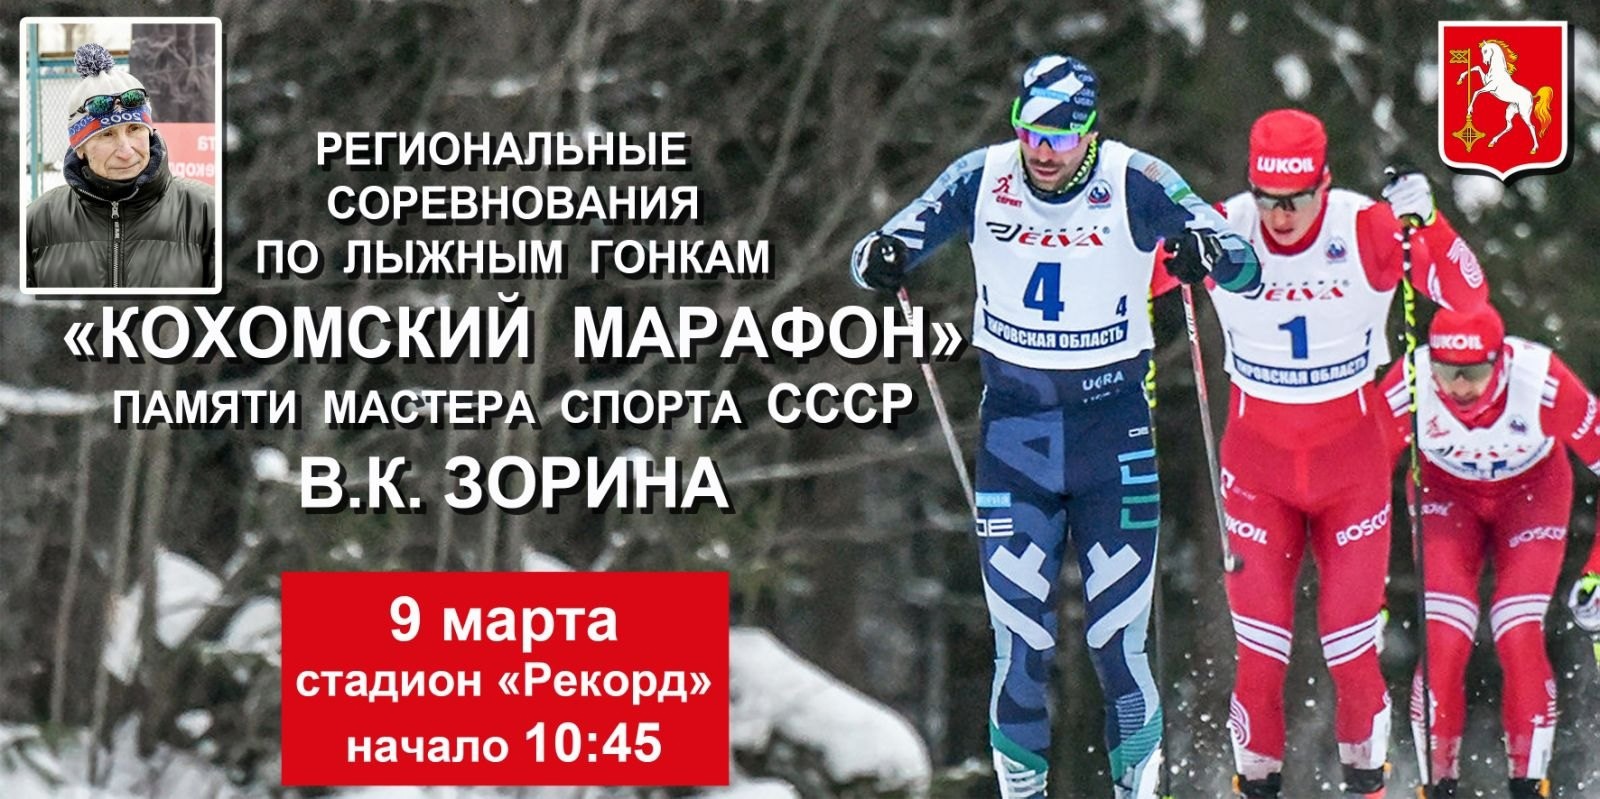 В Ивановской области пройдут соревнования по лыжным гонкам "Кохомский марафон"